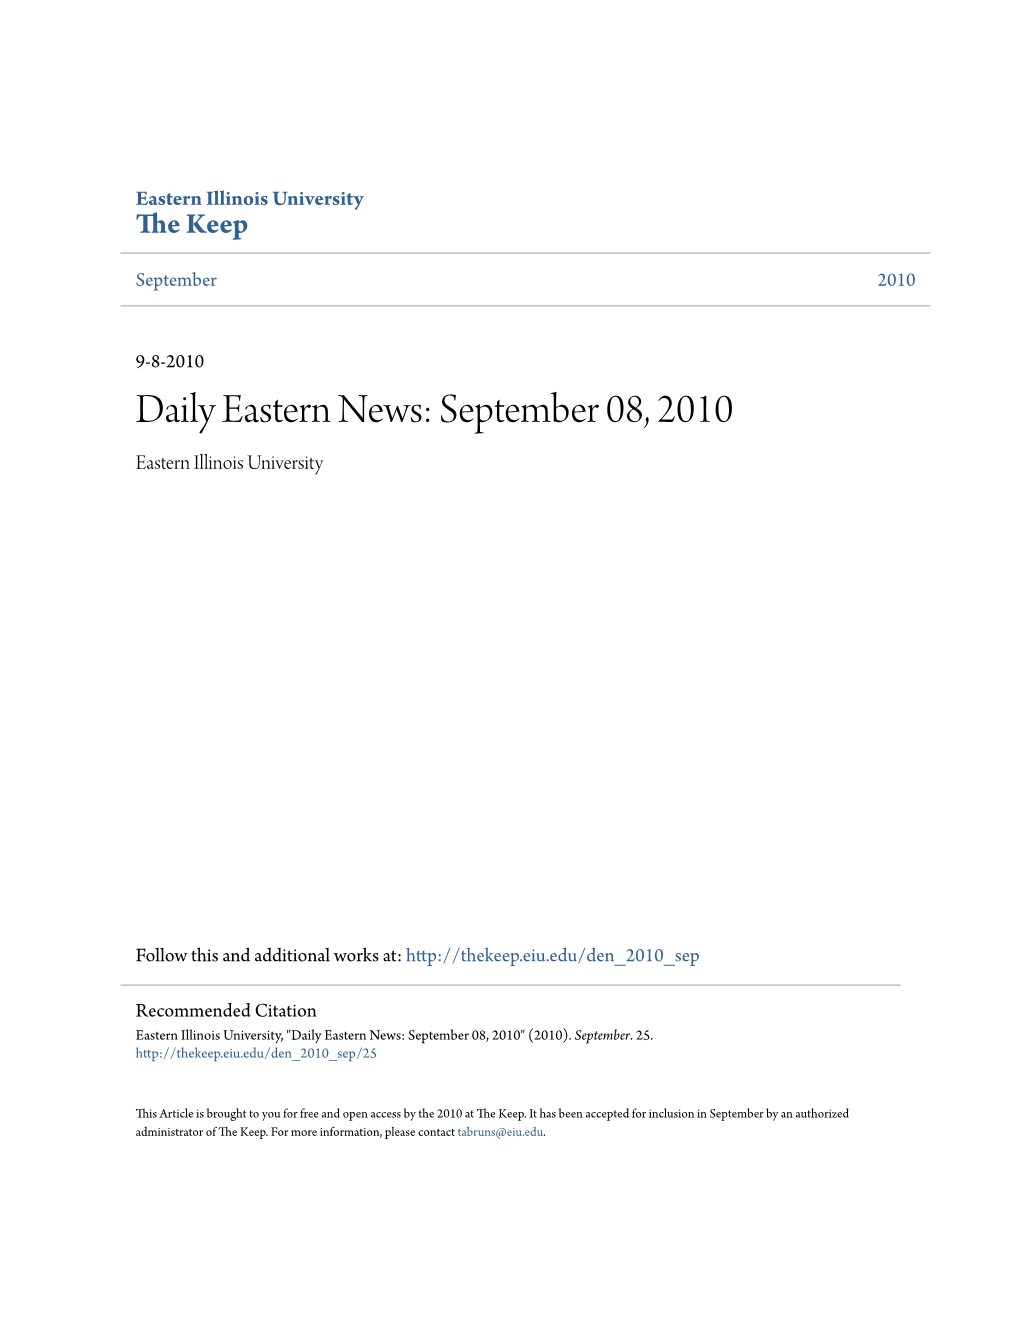 Daily Eastern News: September 08, 2010 Eastern Illinois University